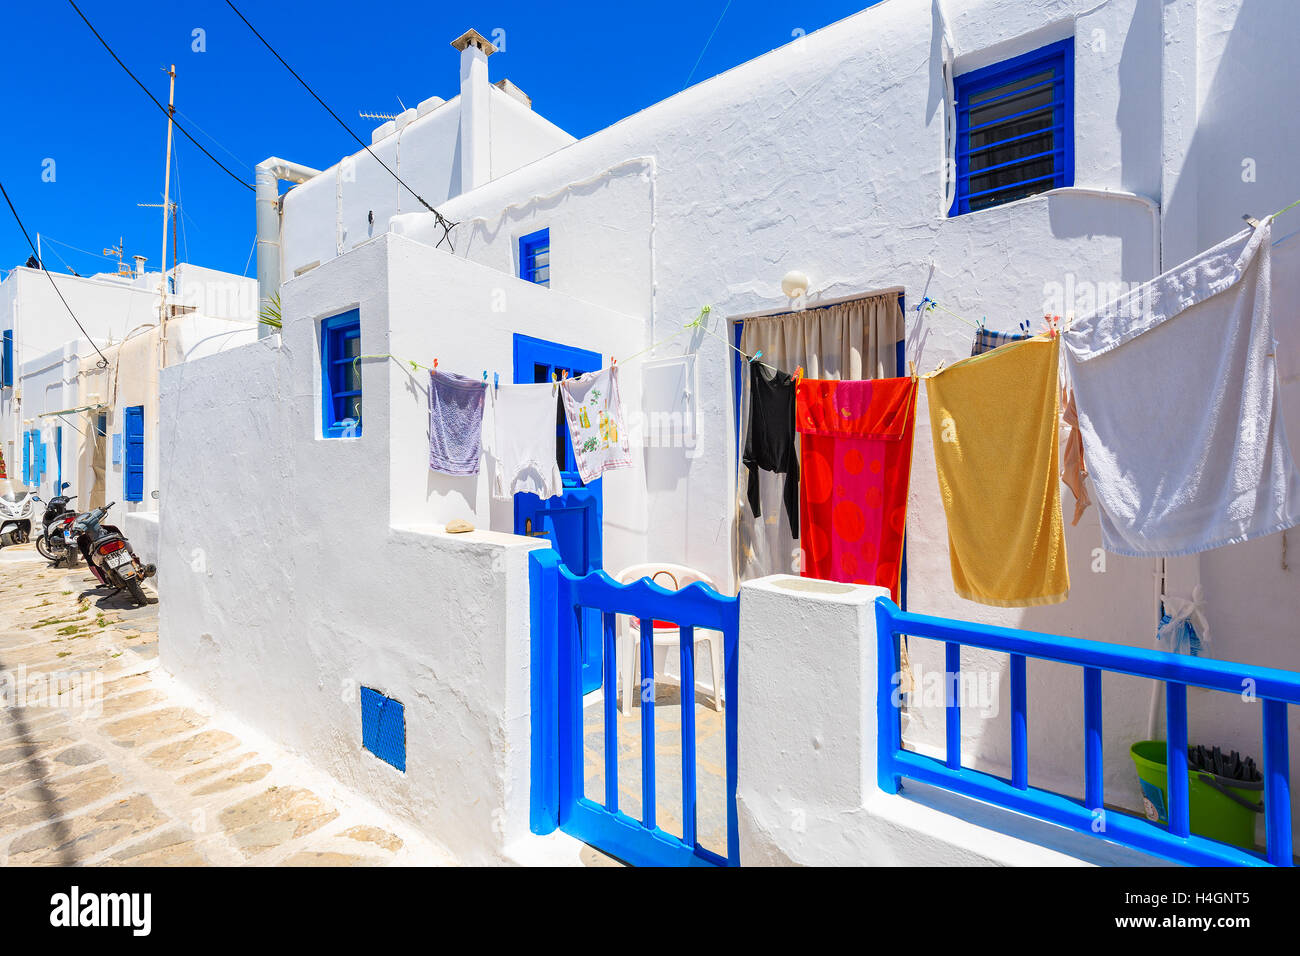 Die Stadt MYKONOS, Griechenland - 15. Mai 2016: Klamotten vor einem Haus mit blauen Türen und Fenster in weiß getünchten Straße im Myko Stockfoto